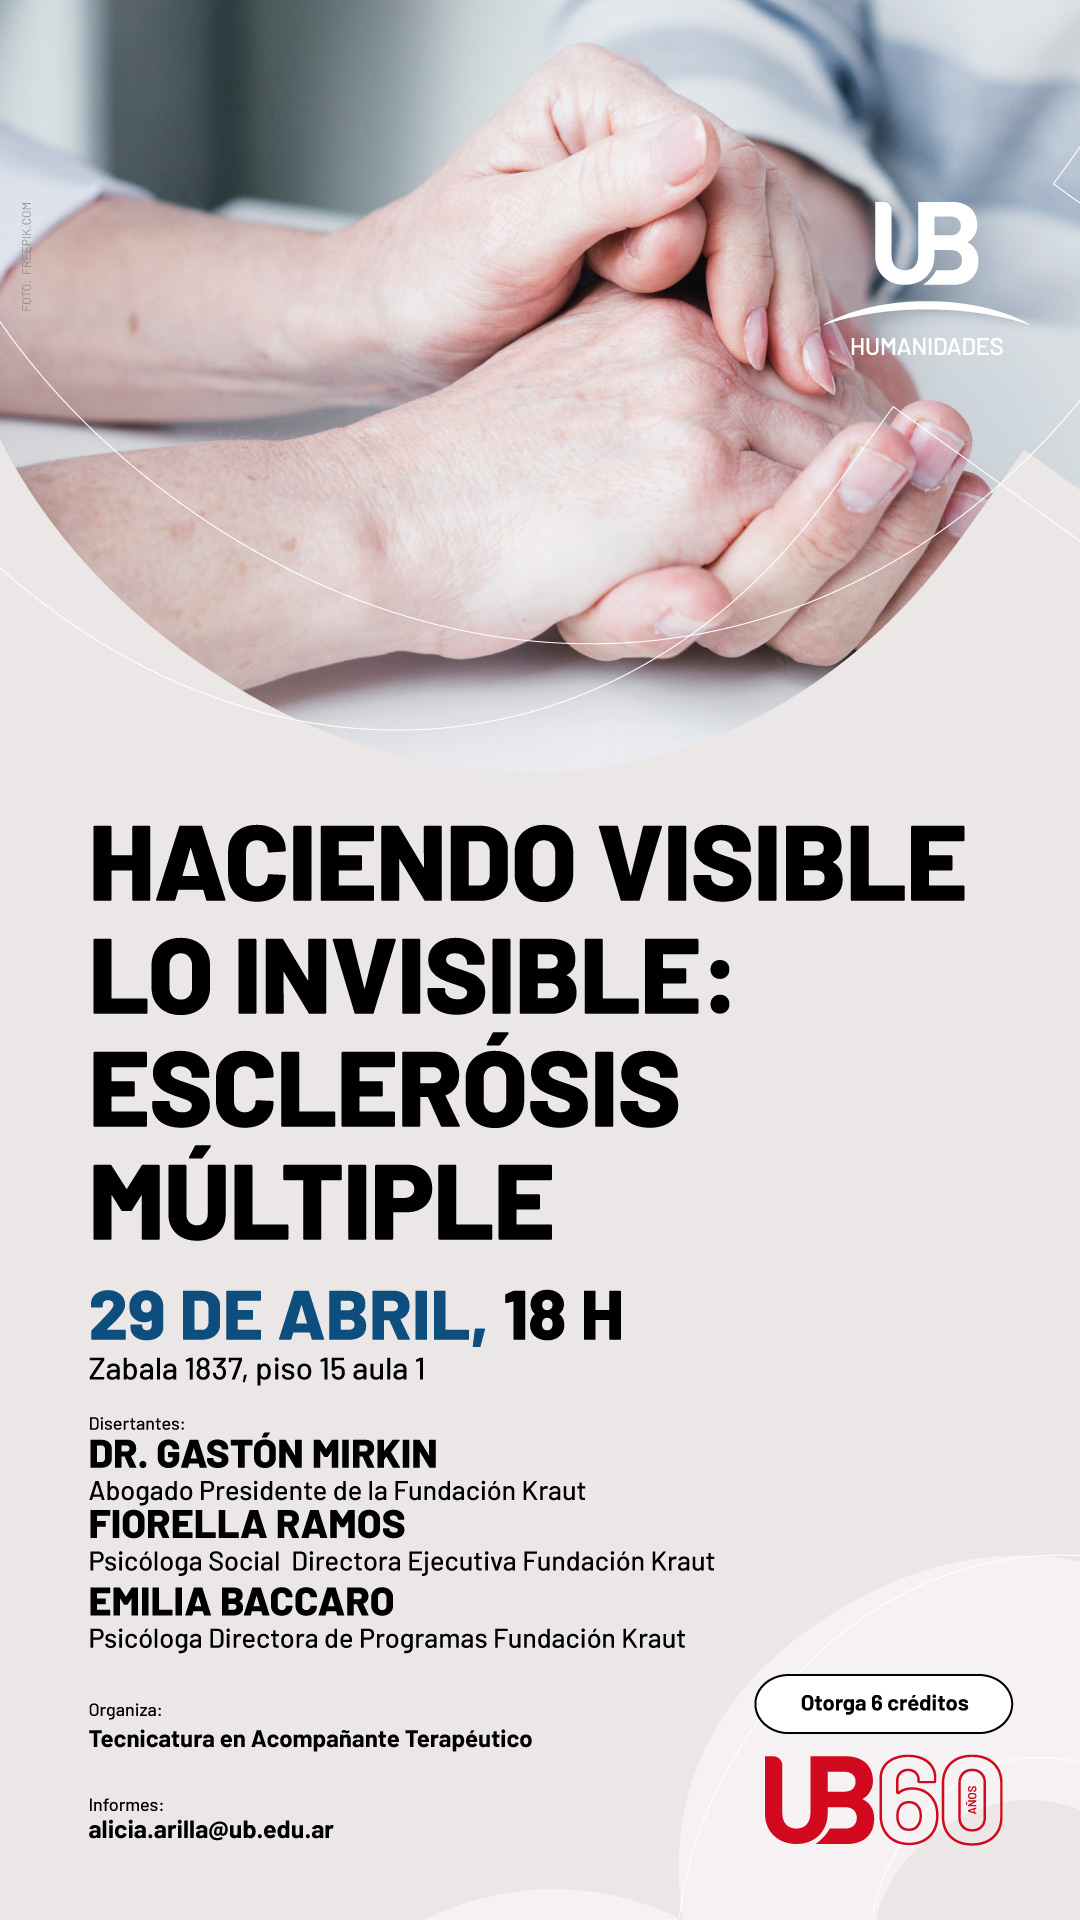 Haciendo visible lo invisible: Esclerosis Múltiple